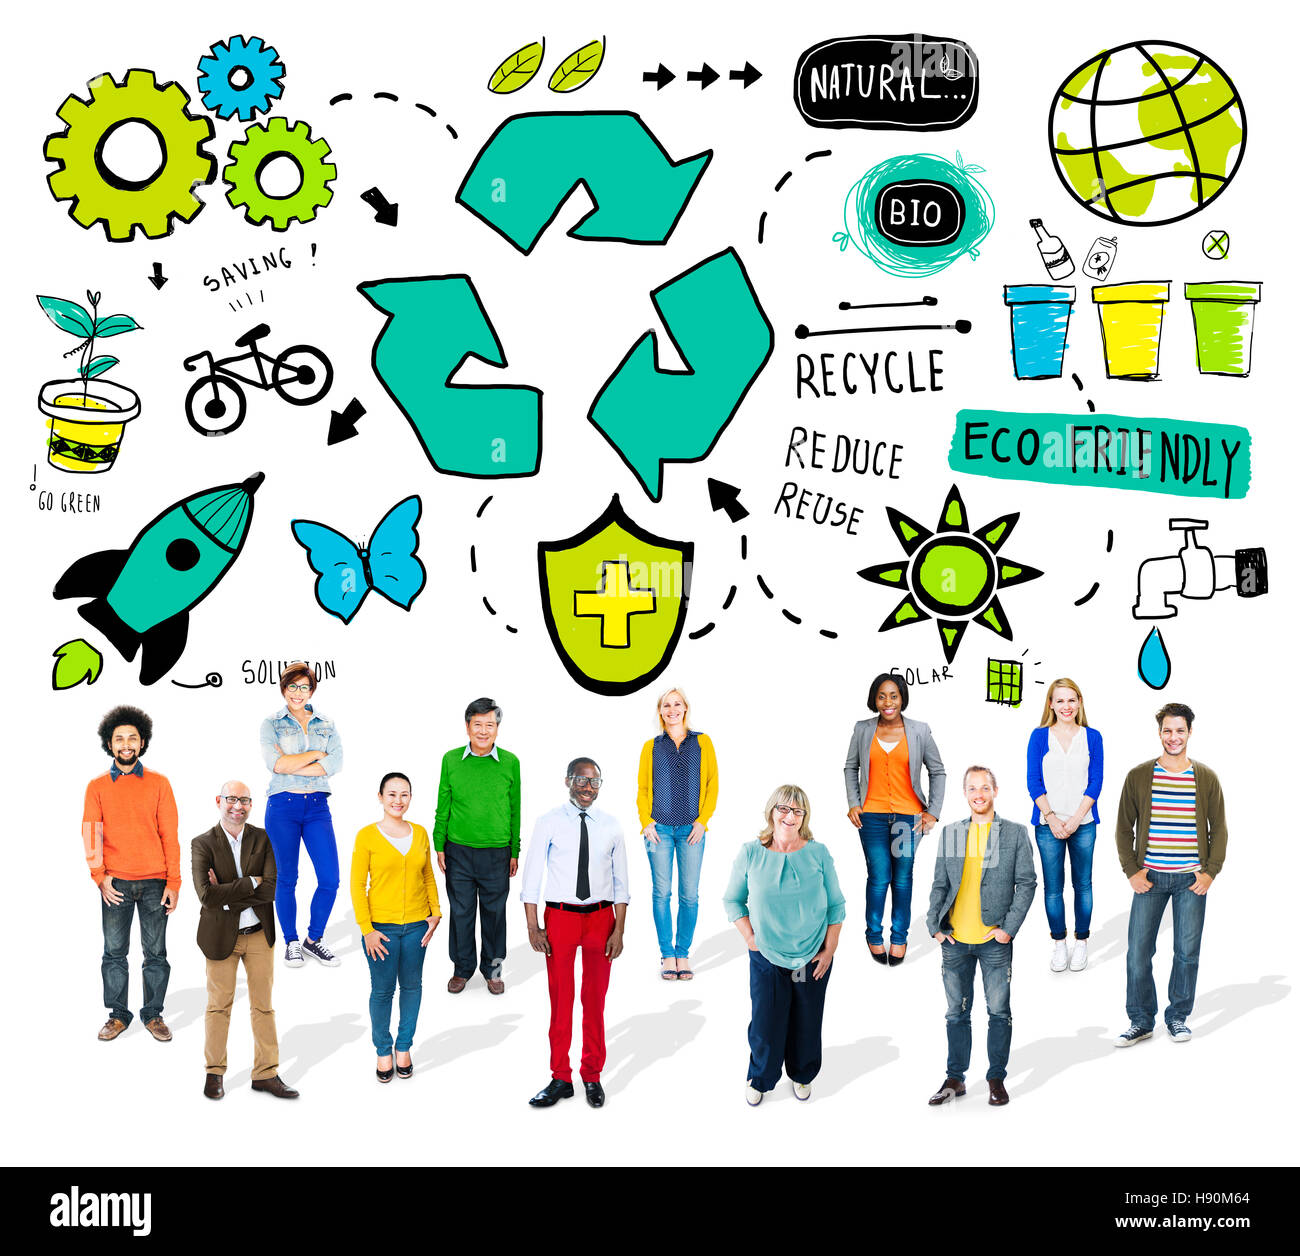 Recycling-Wiederverwendung reduzieren Bio-Öko-Umwelt-Konzept Stockfoto